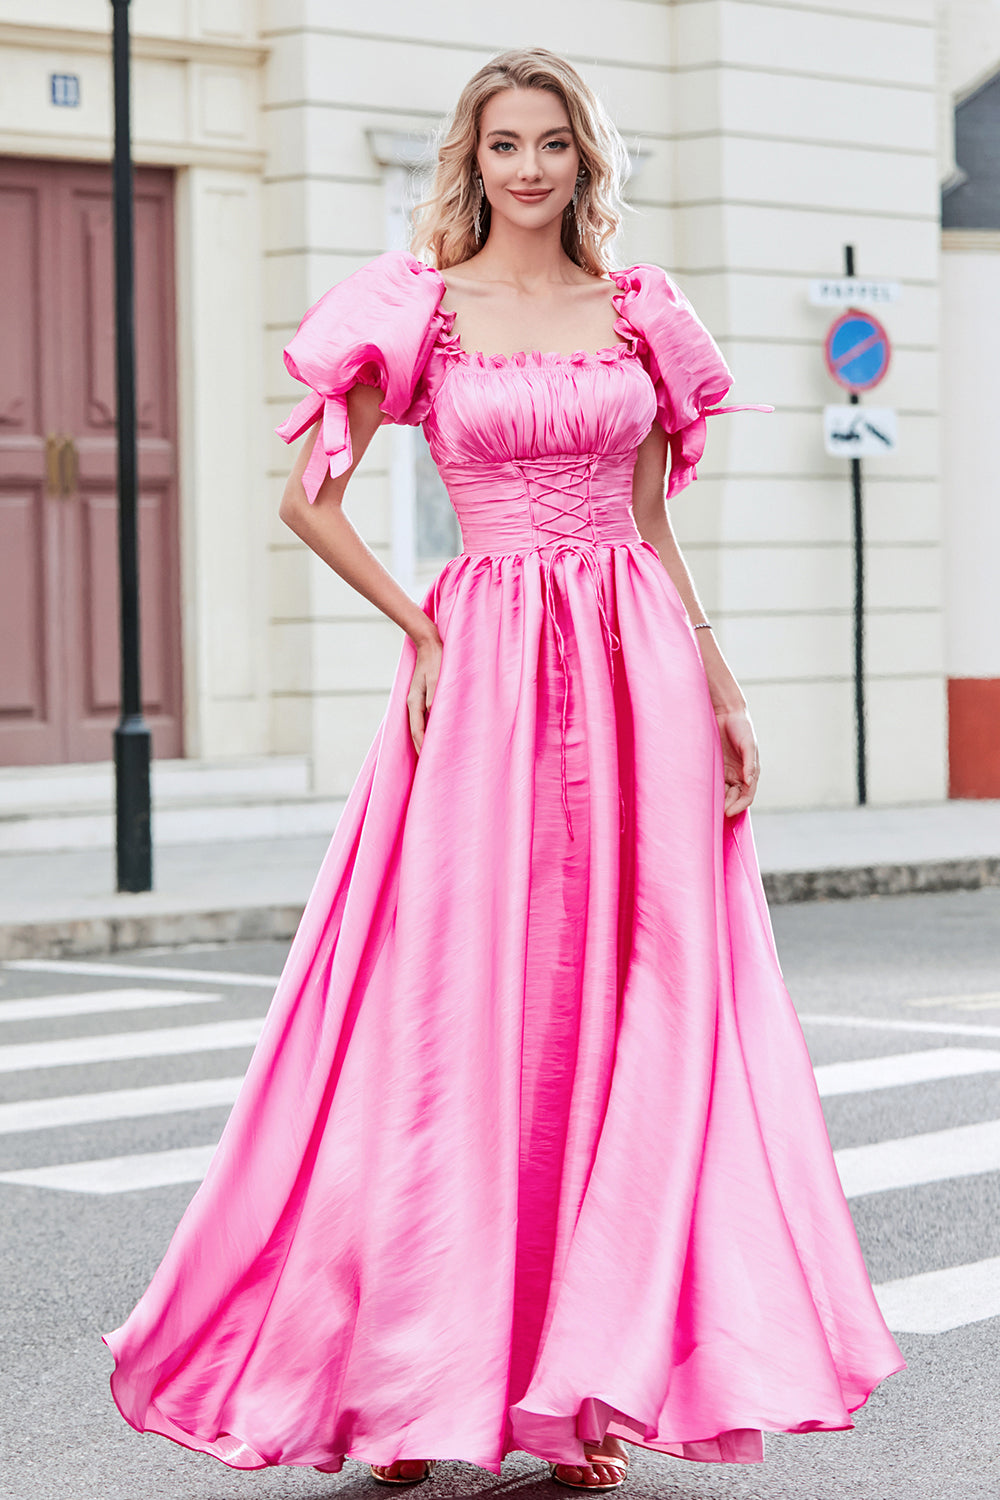 Princess A Line Pinkfarbenes langes Ballkleid mit quadratischem Ausschnitt und Puffärmeln